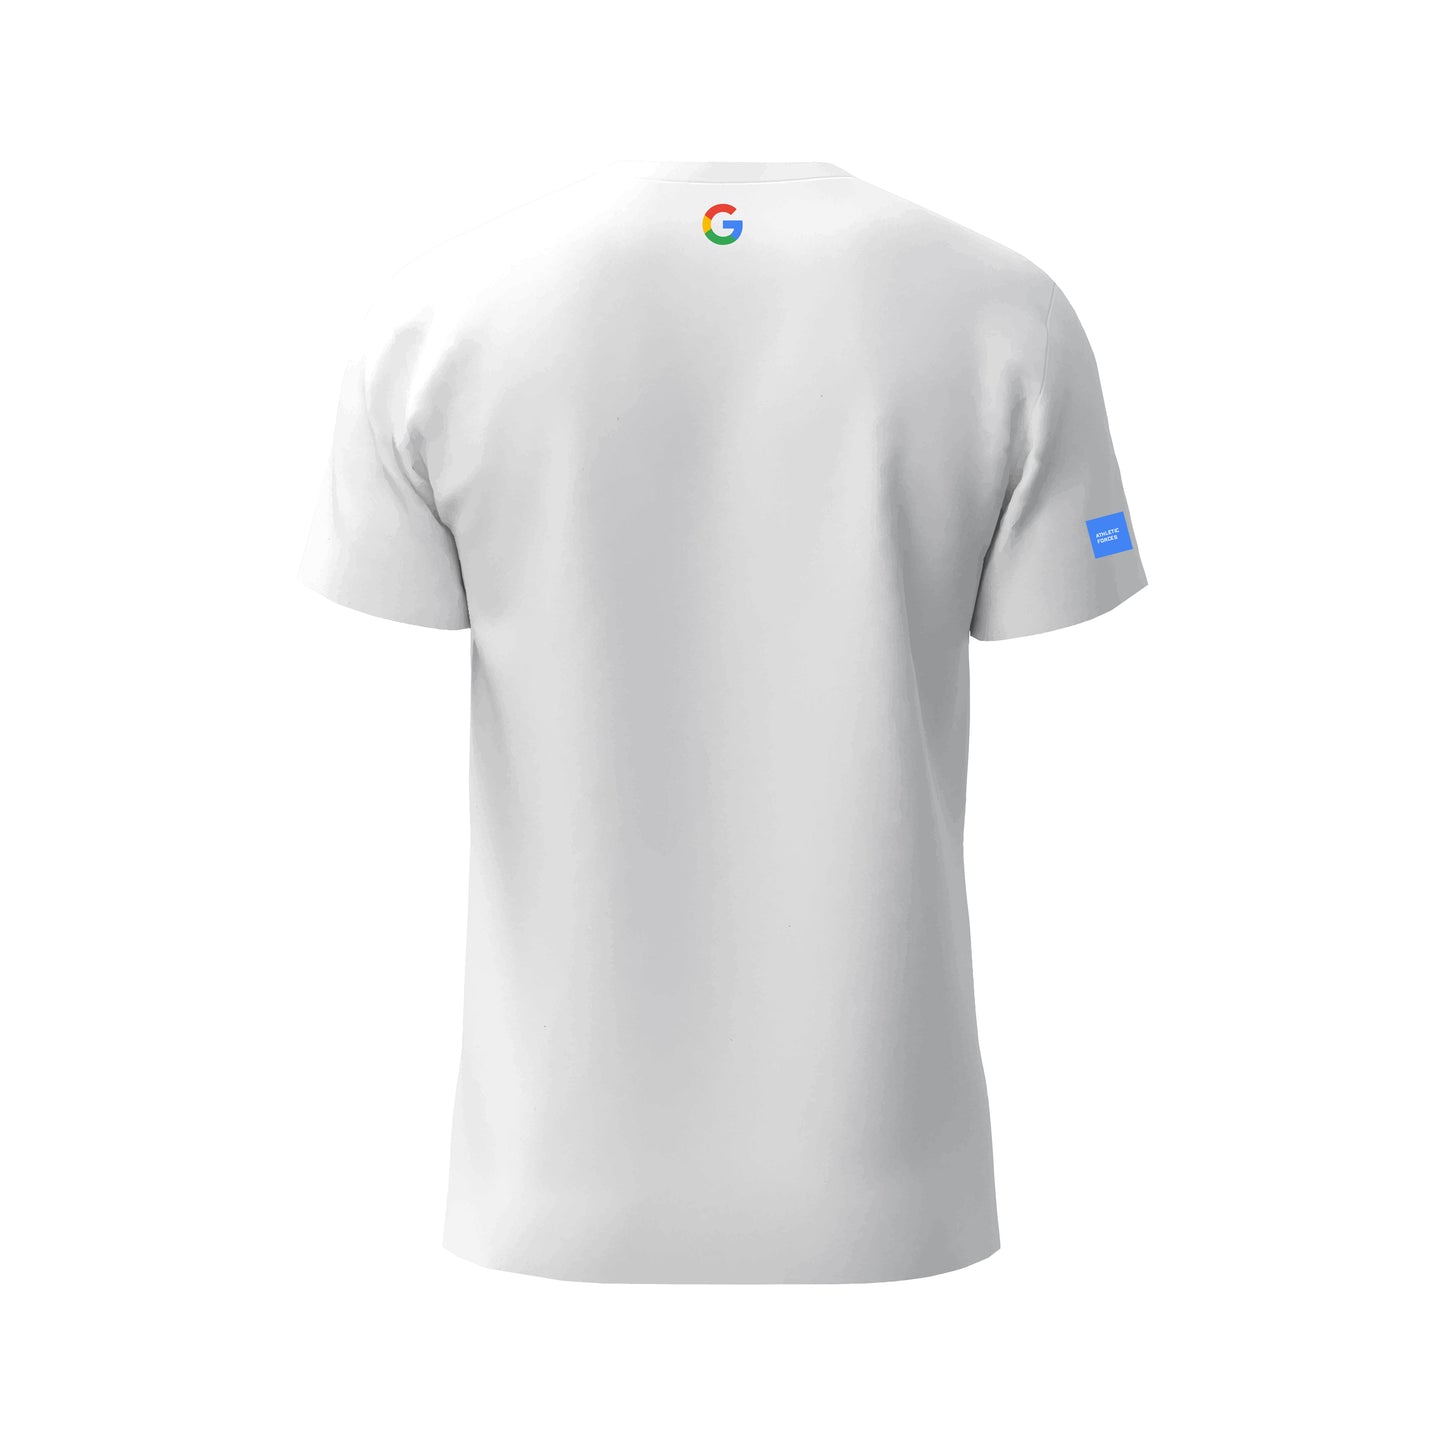 Google - T-shirt Union of Forces ® par Athletic Forces - Modèle 1